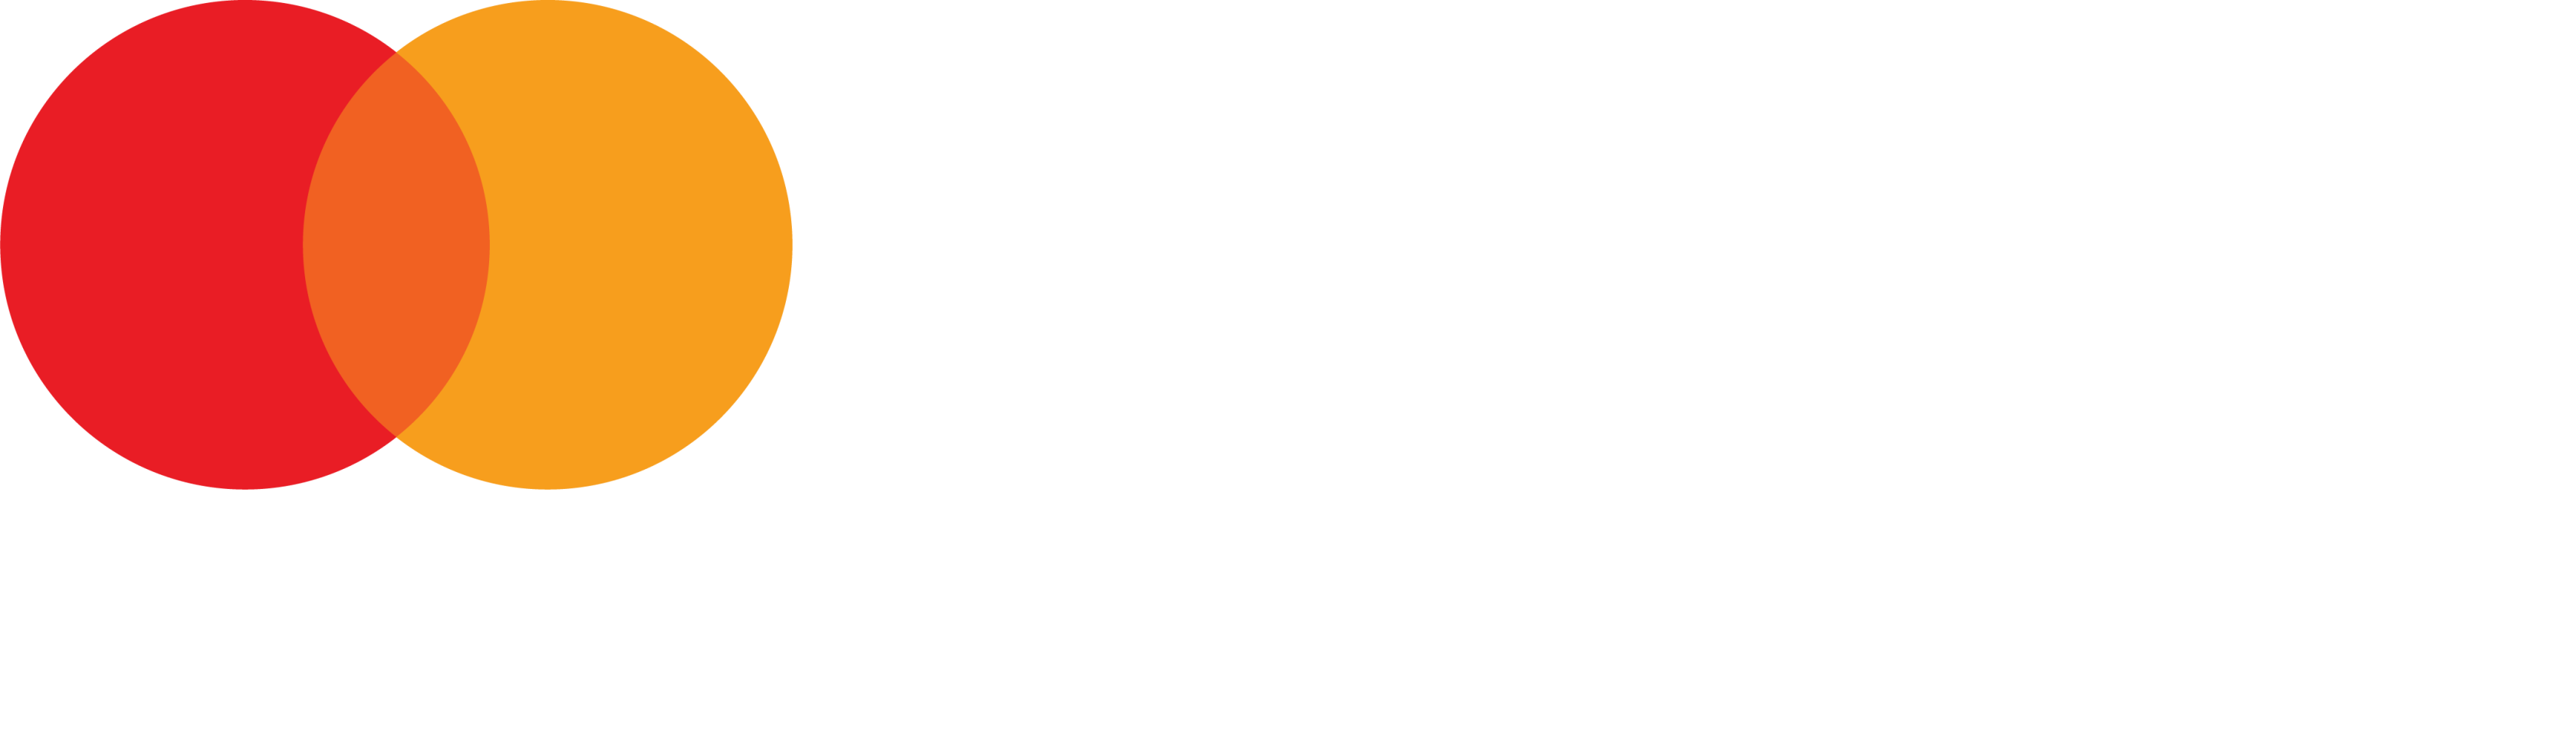 Mastercard Foundation Asset Management logo